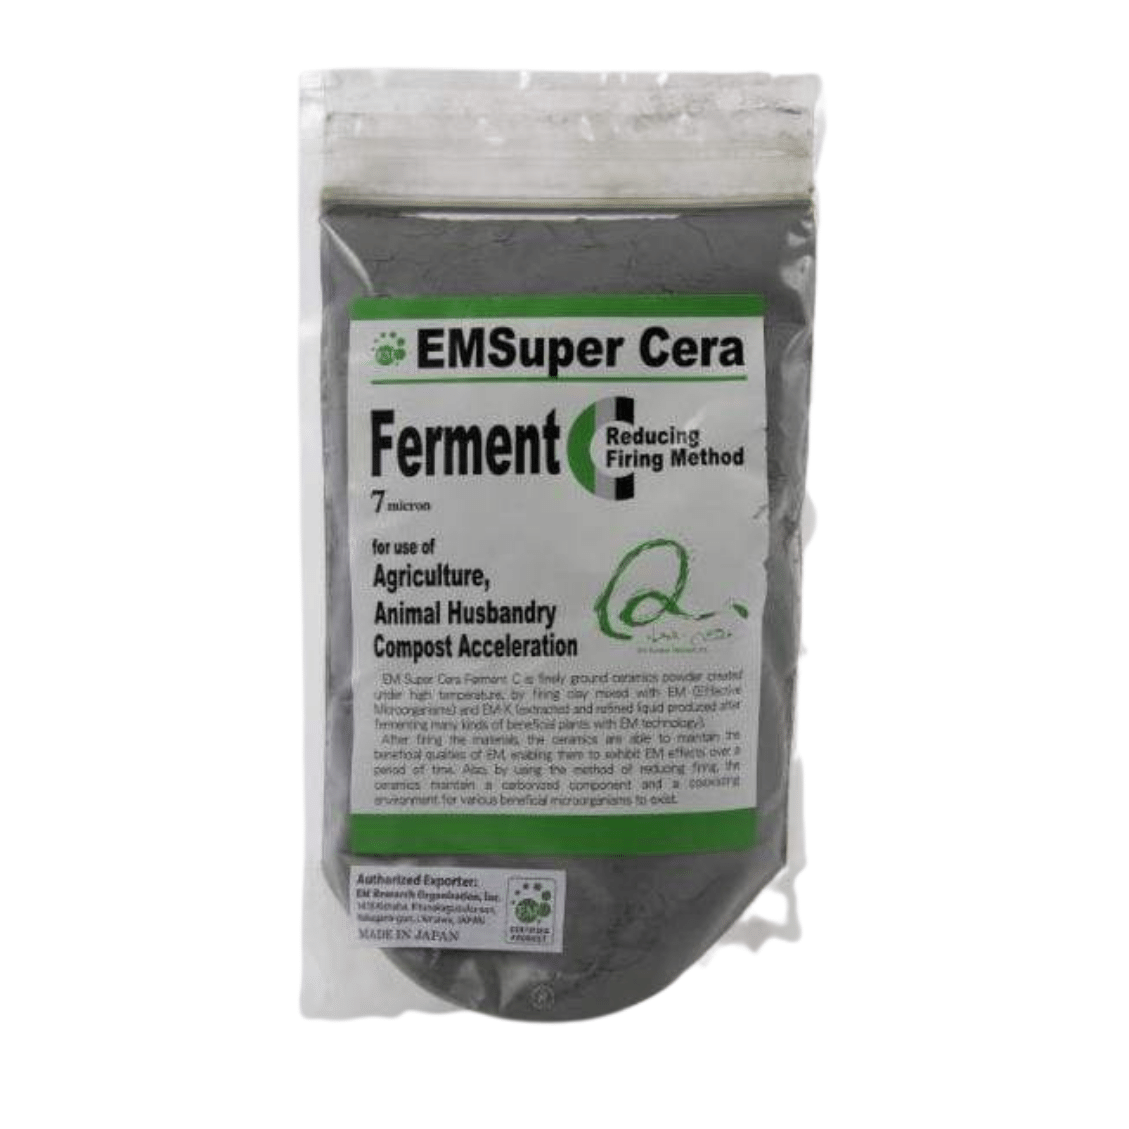 TeraGanix Soil Amendment Super Cera Powder 1 lb Bag (400g) Super Cera Powder | Agriculture